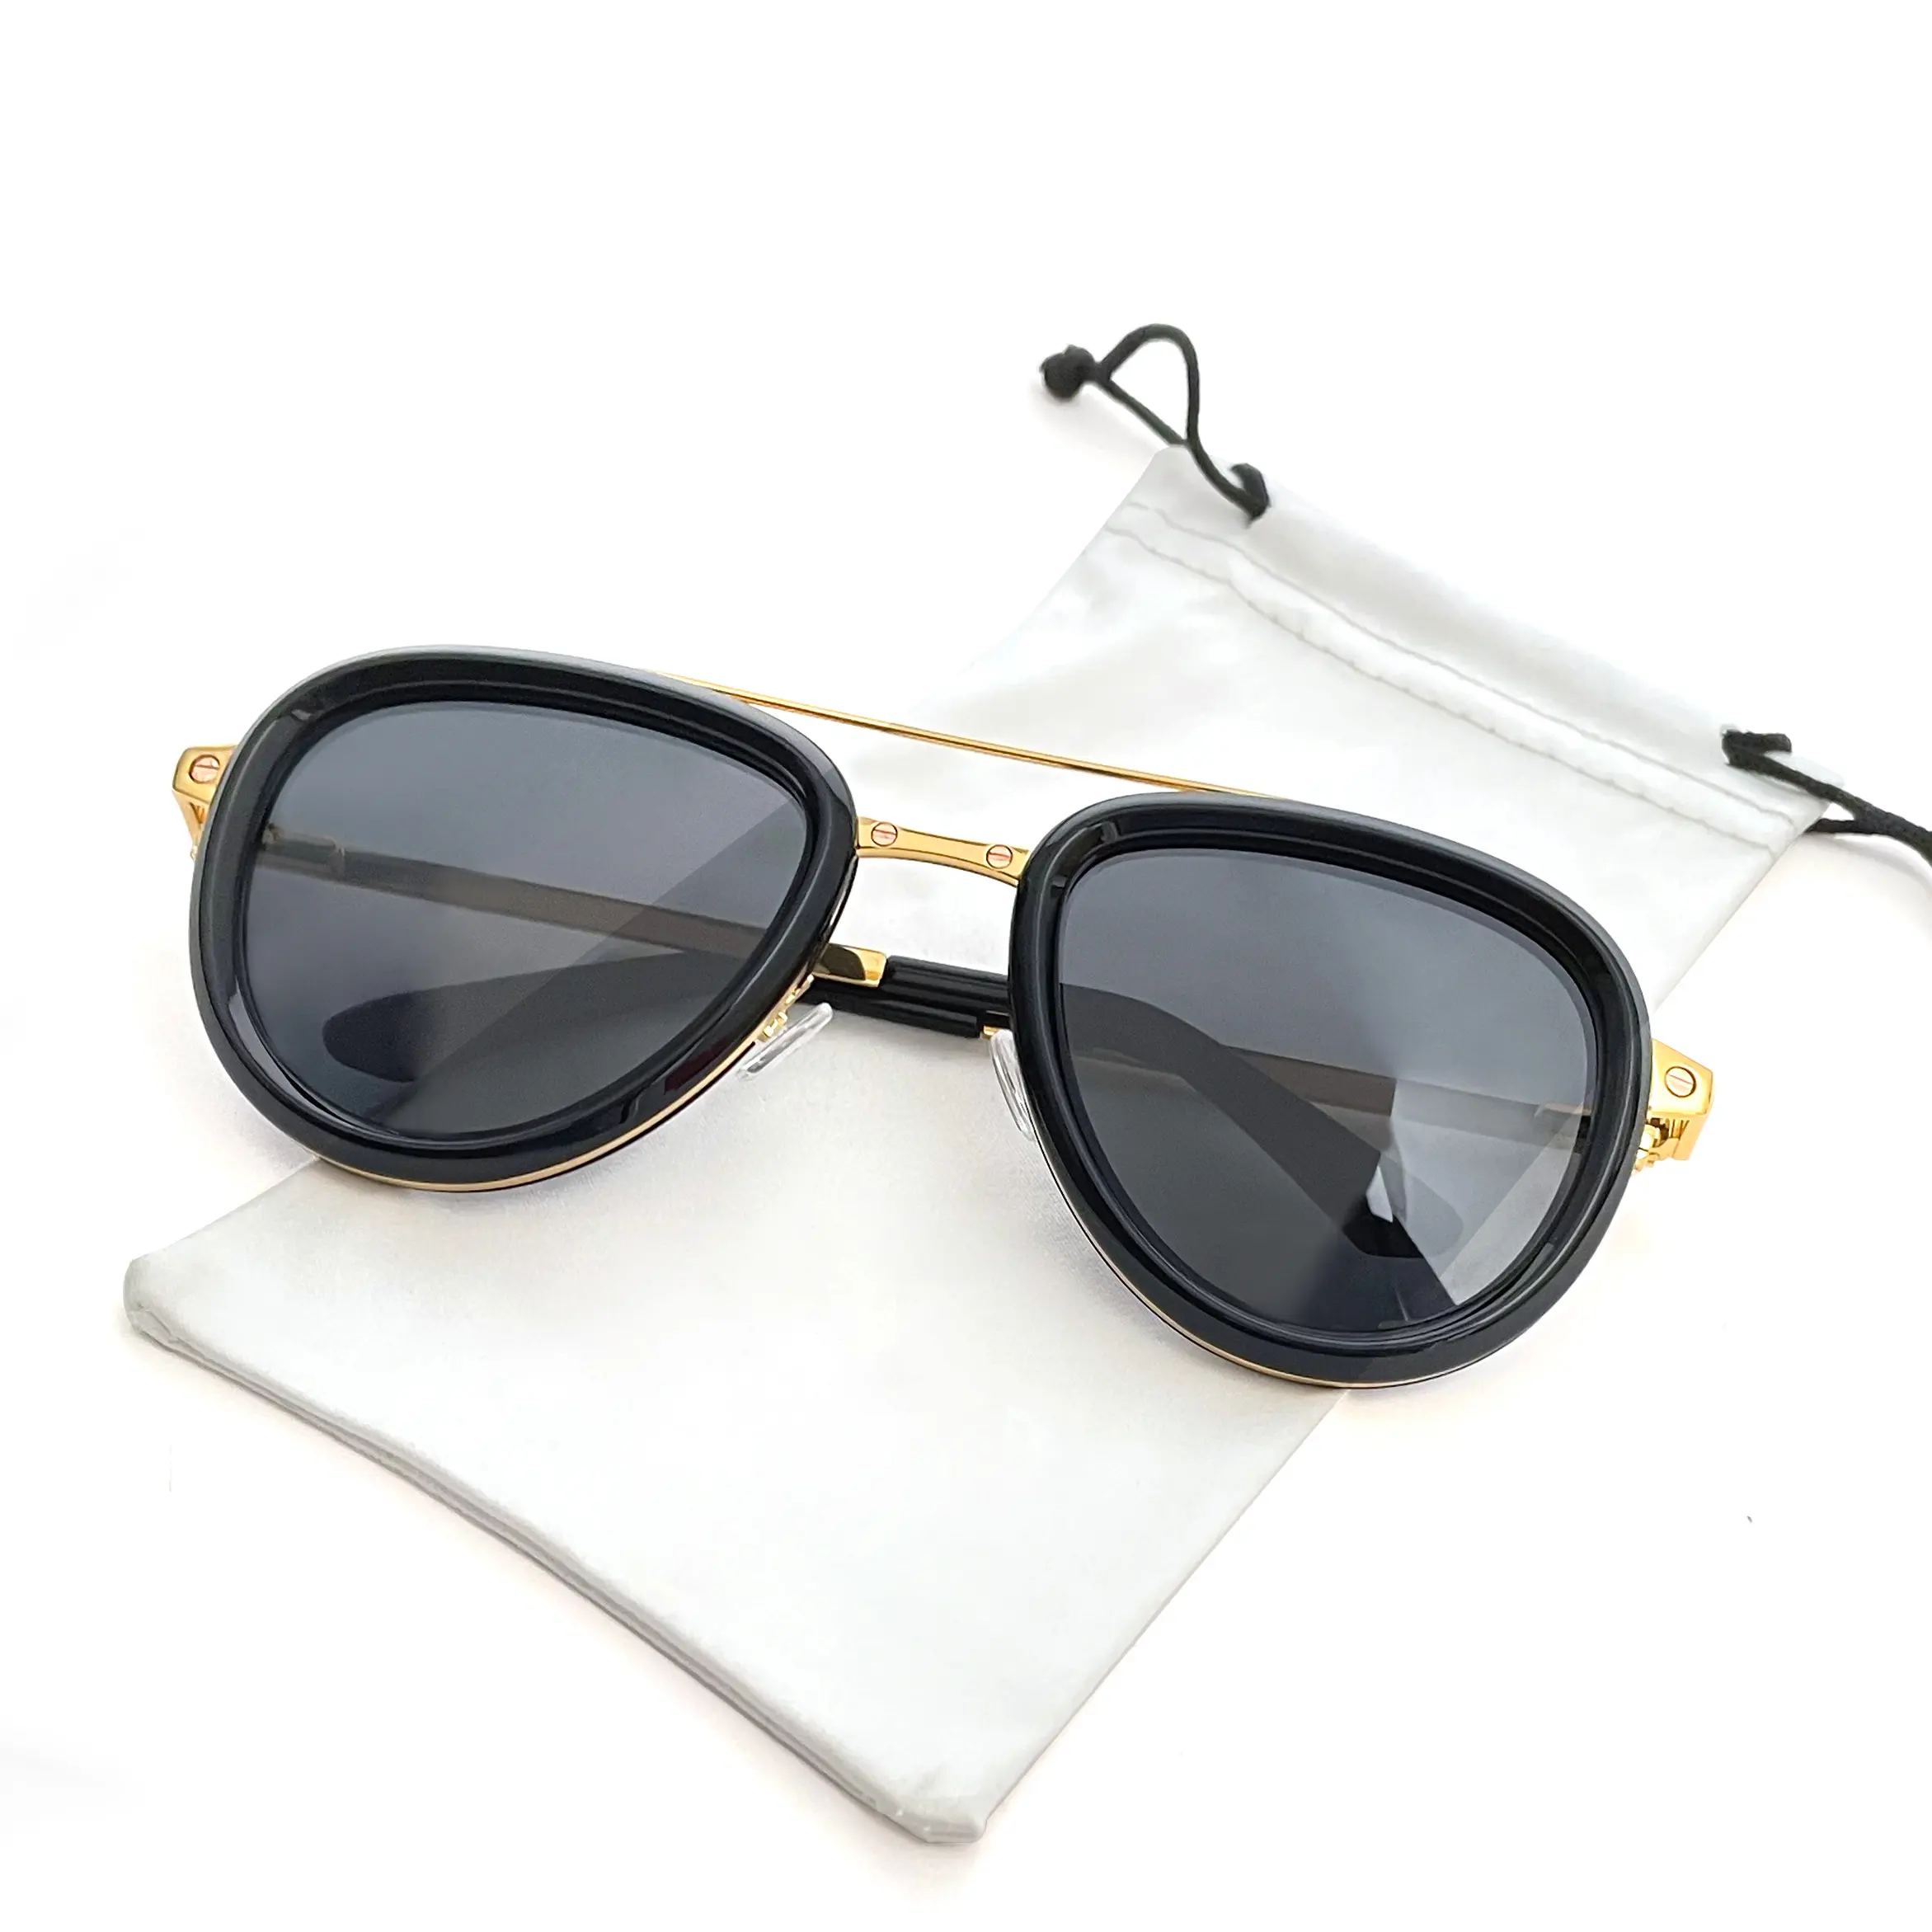 Sifier all'ingrosso di alta qualità pilot shades occhiali da sole oversize alla moda occhiali da sole polarizzati alla moda in metallo acetato